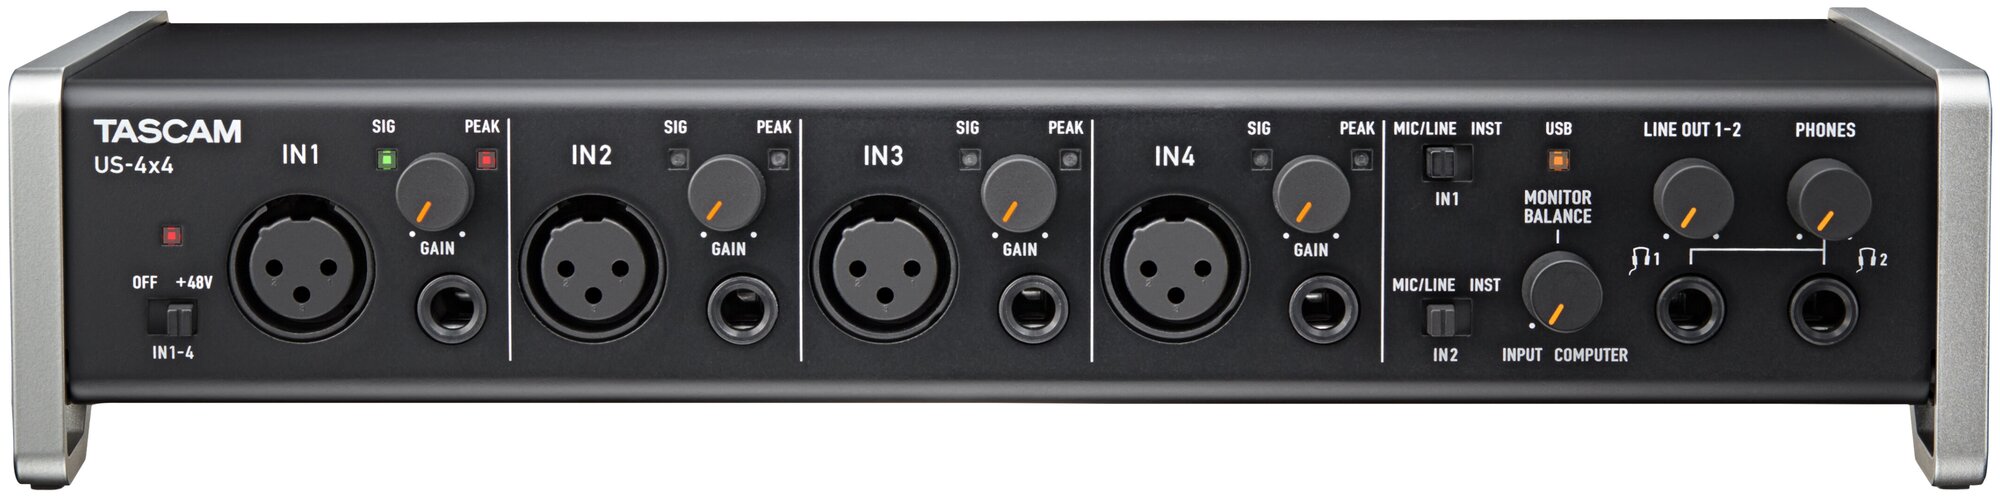 Tascam US-4X4 USB аудиоинтерфейс